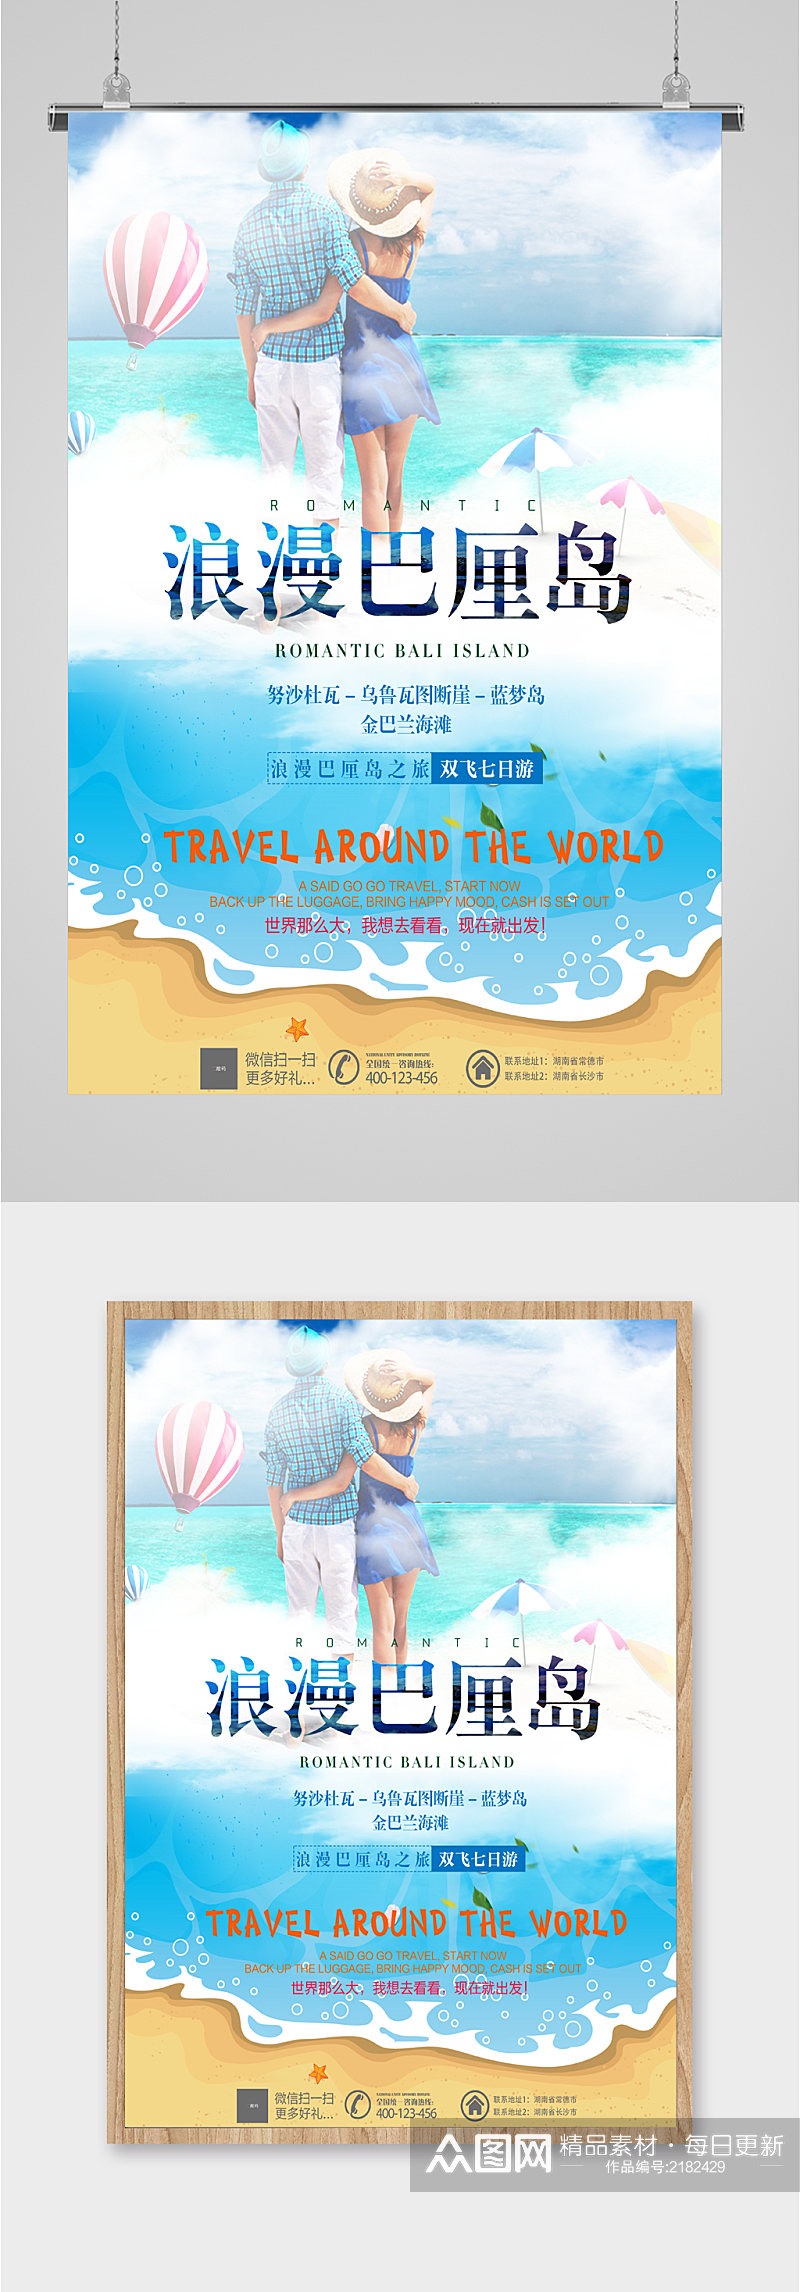 浪漫巴厘岛旅游海报素材